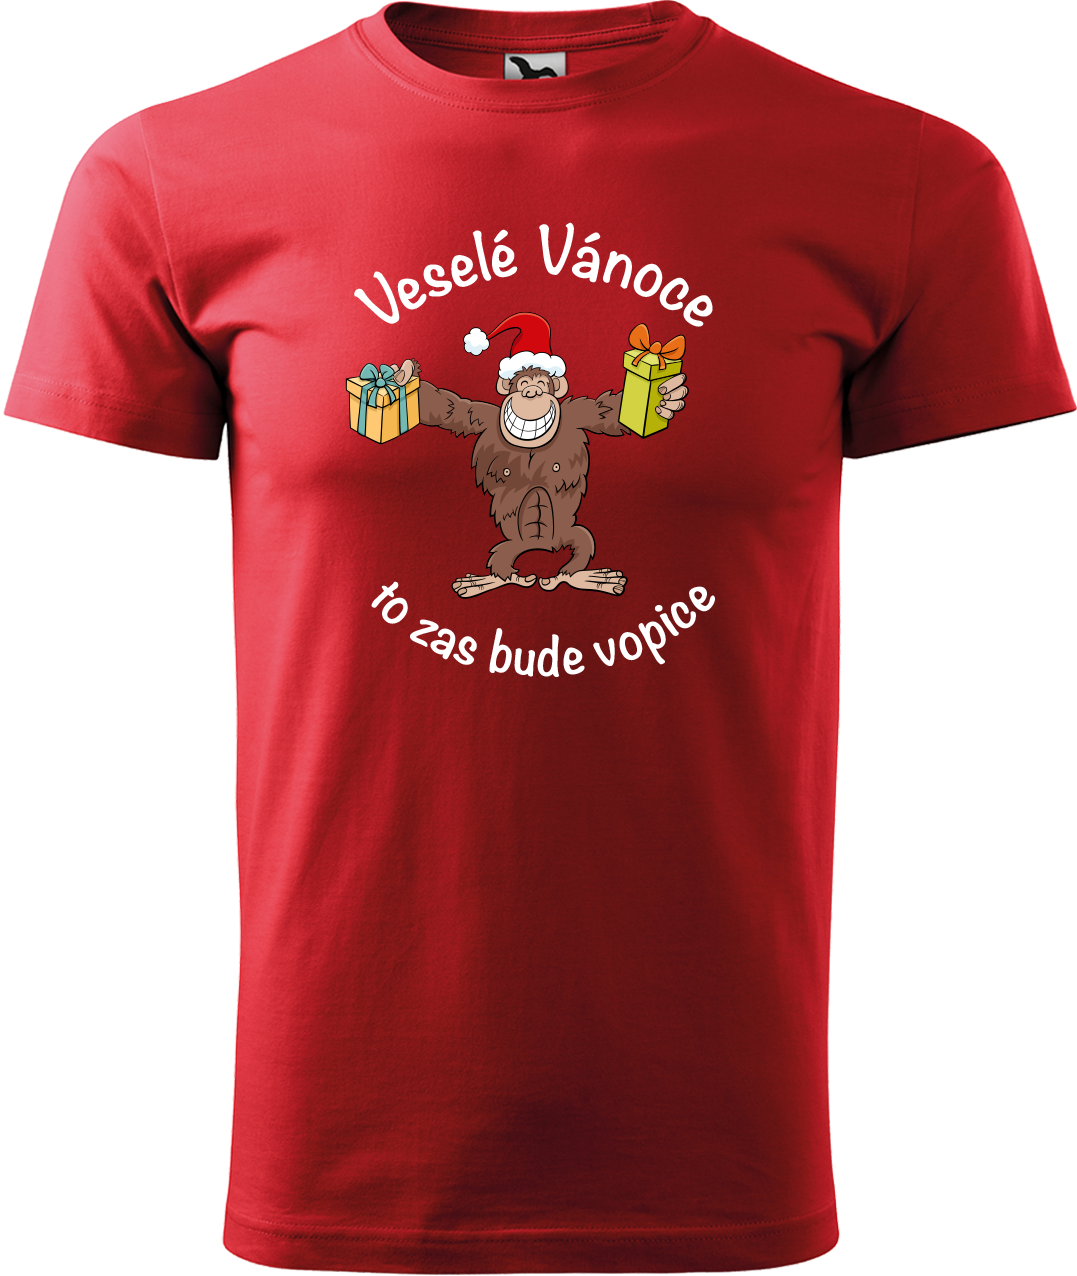 Pánské vánoční tričko - Veselé Vánoce to zas bude vopice (hnědý opičák) Velikost: 3XL, Barva: Červená (07)